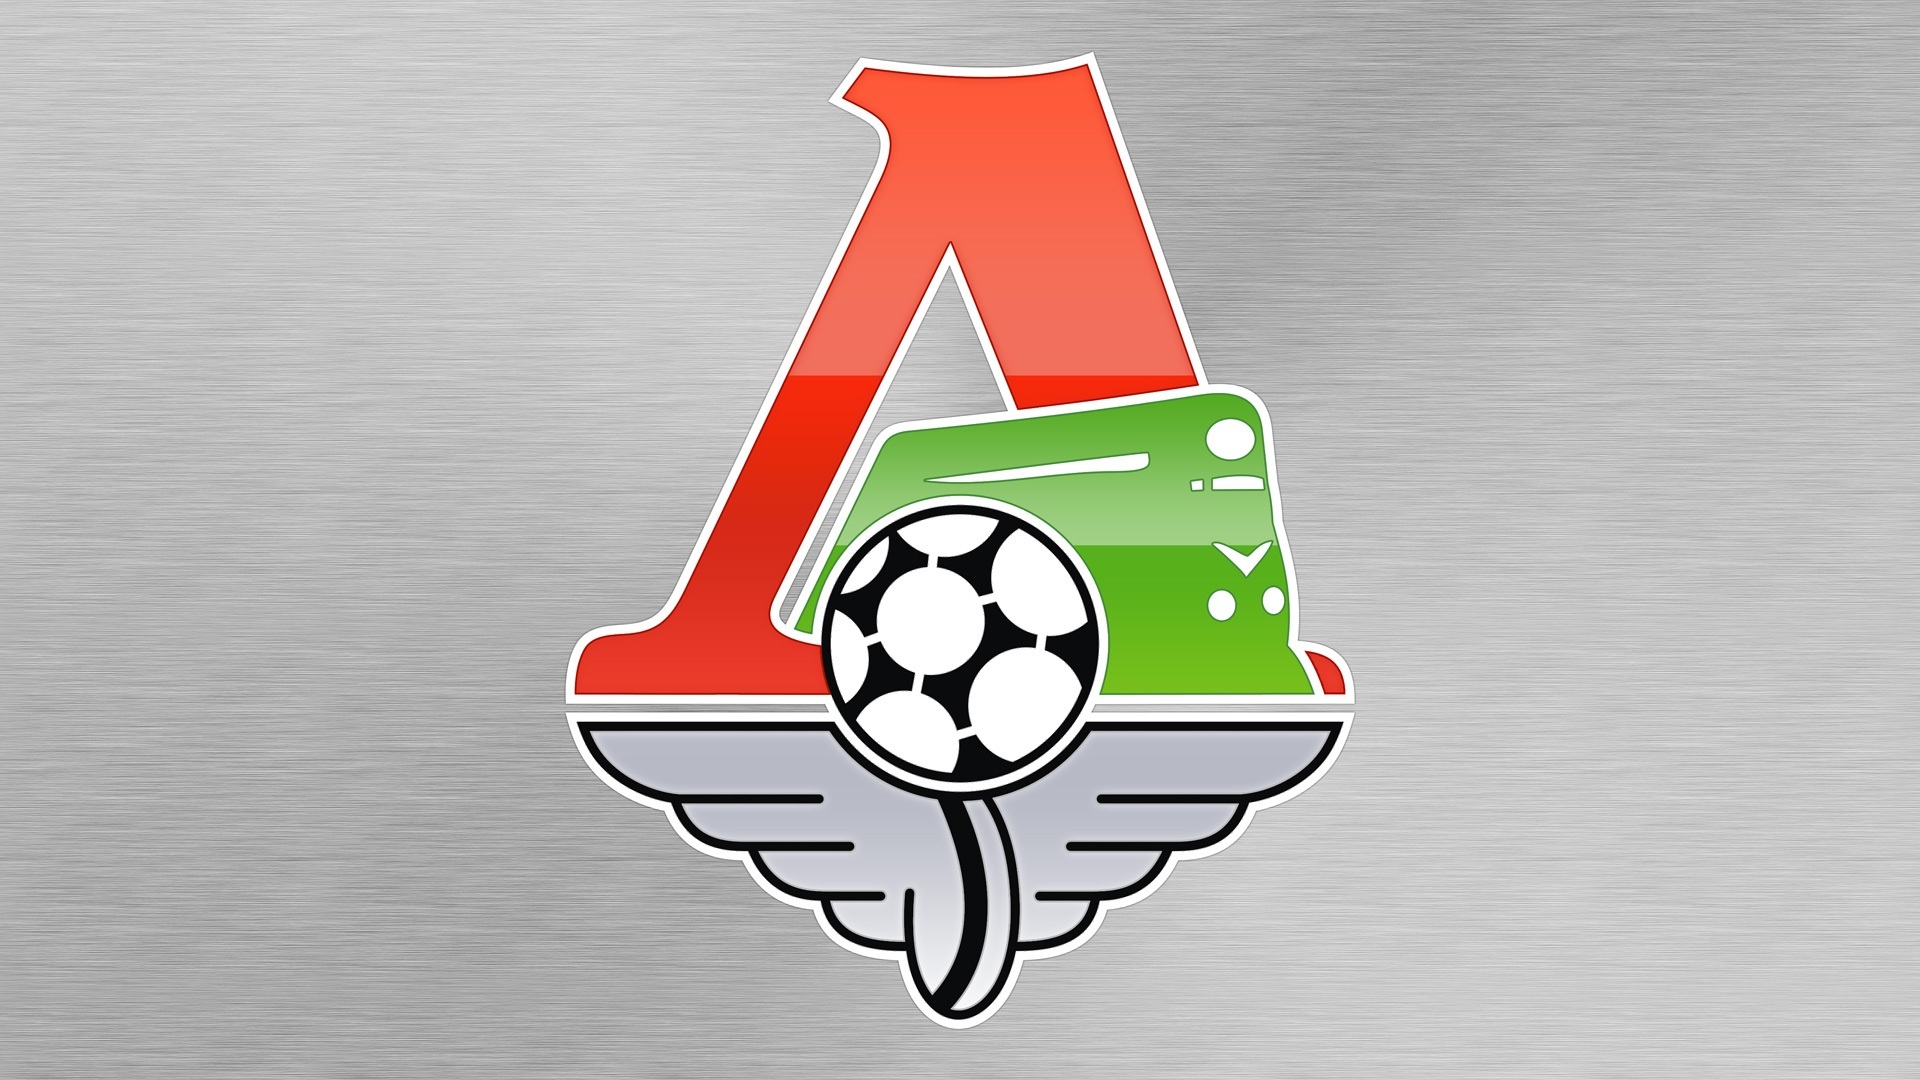 Download mobile wallpaper Sports, Logo, Emblem, Soccer, Fc Lokomotiv Moscow for free.